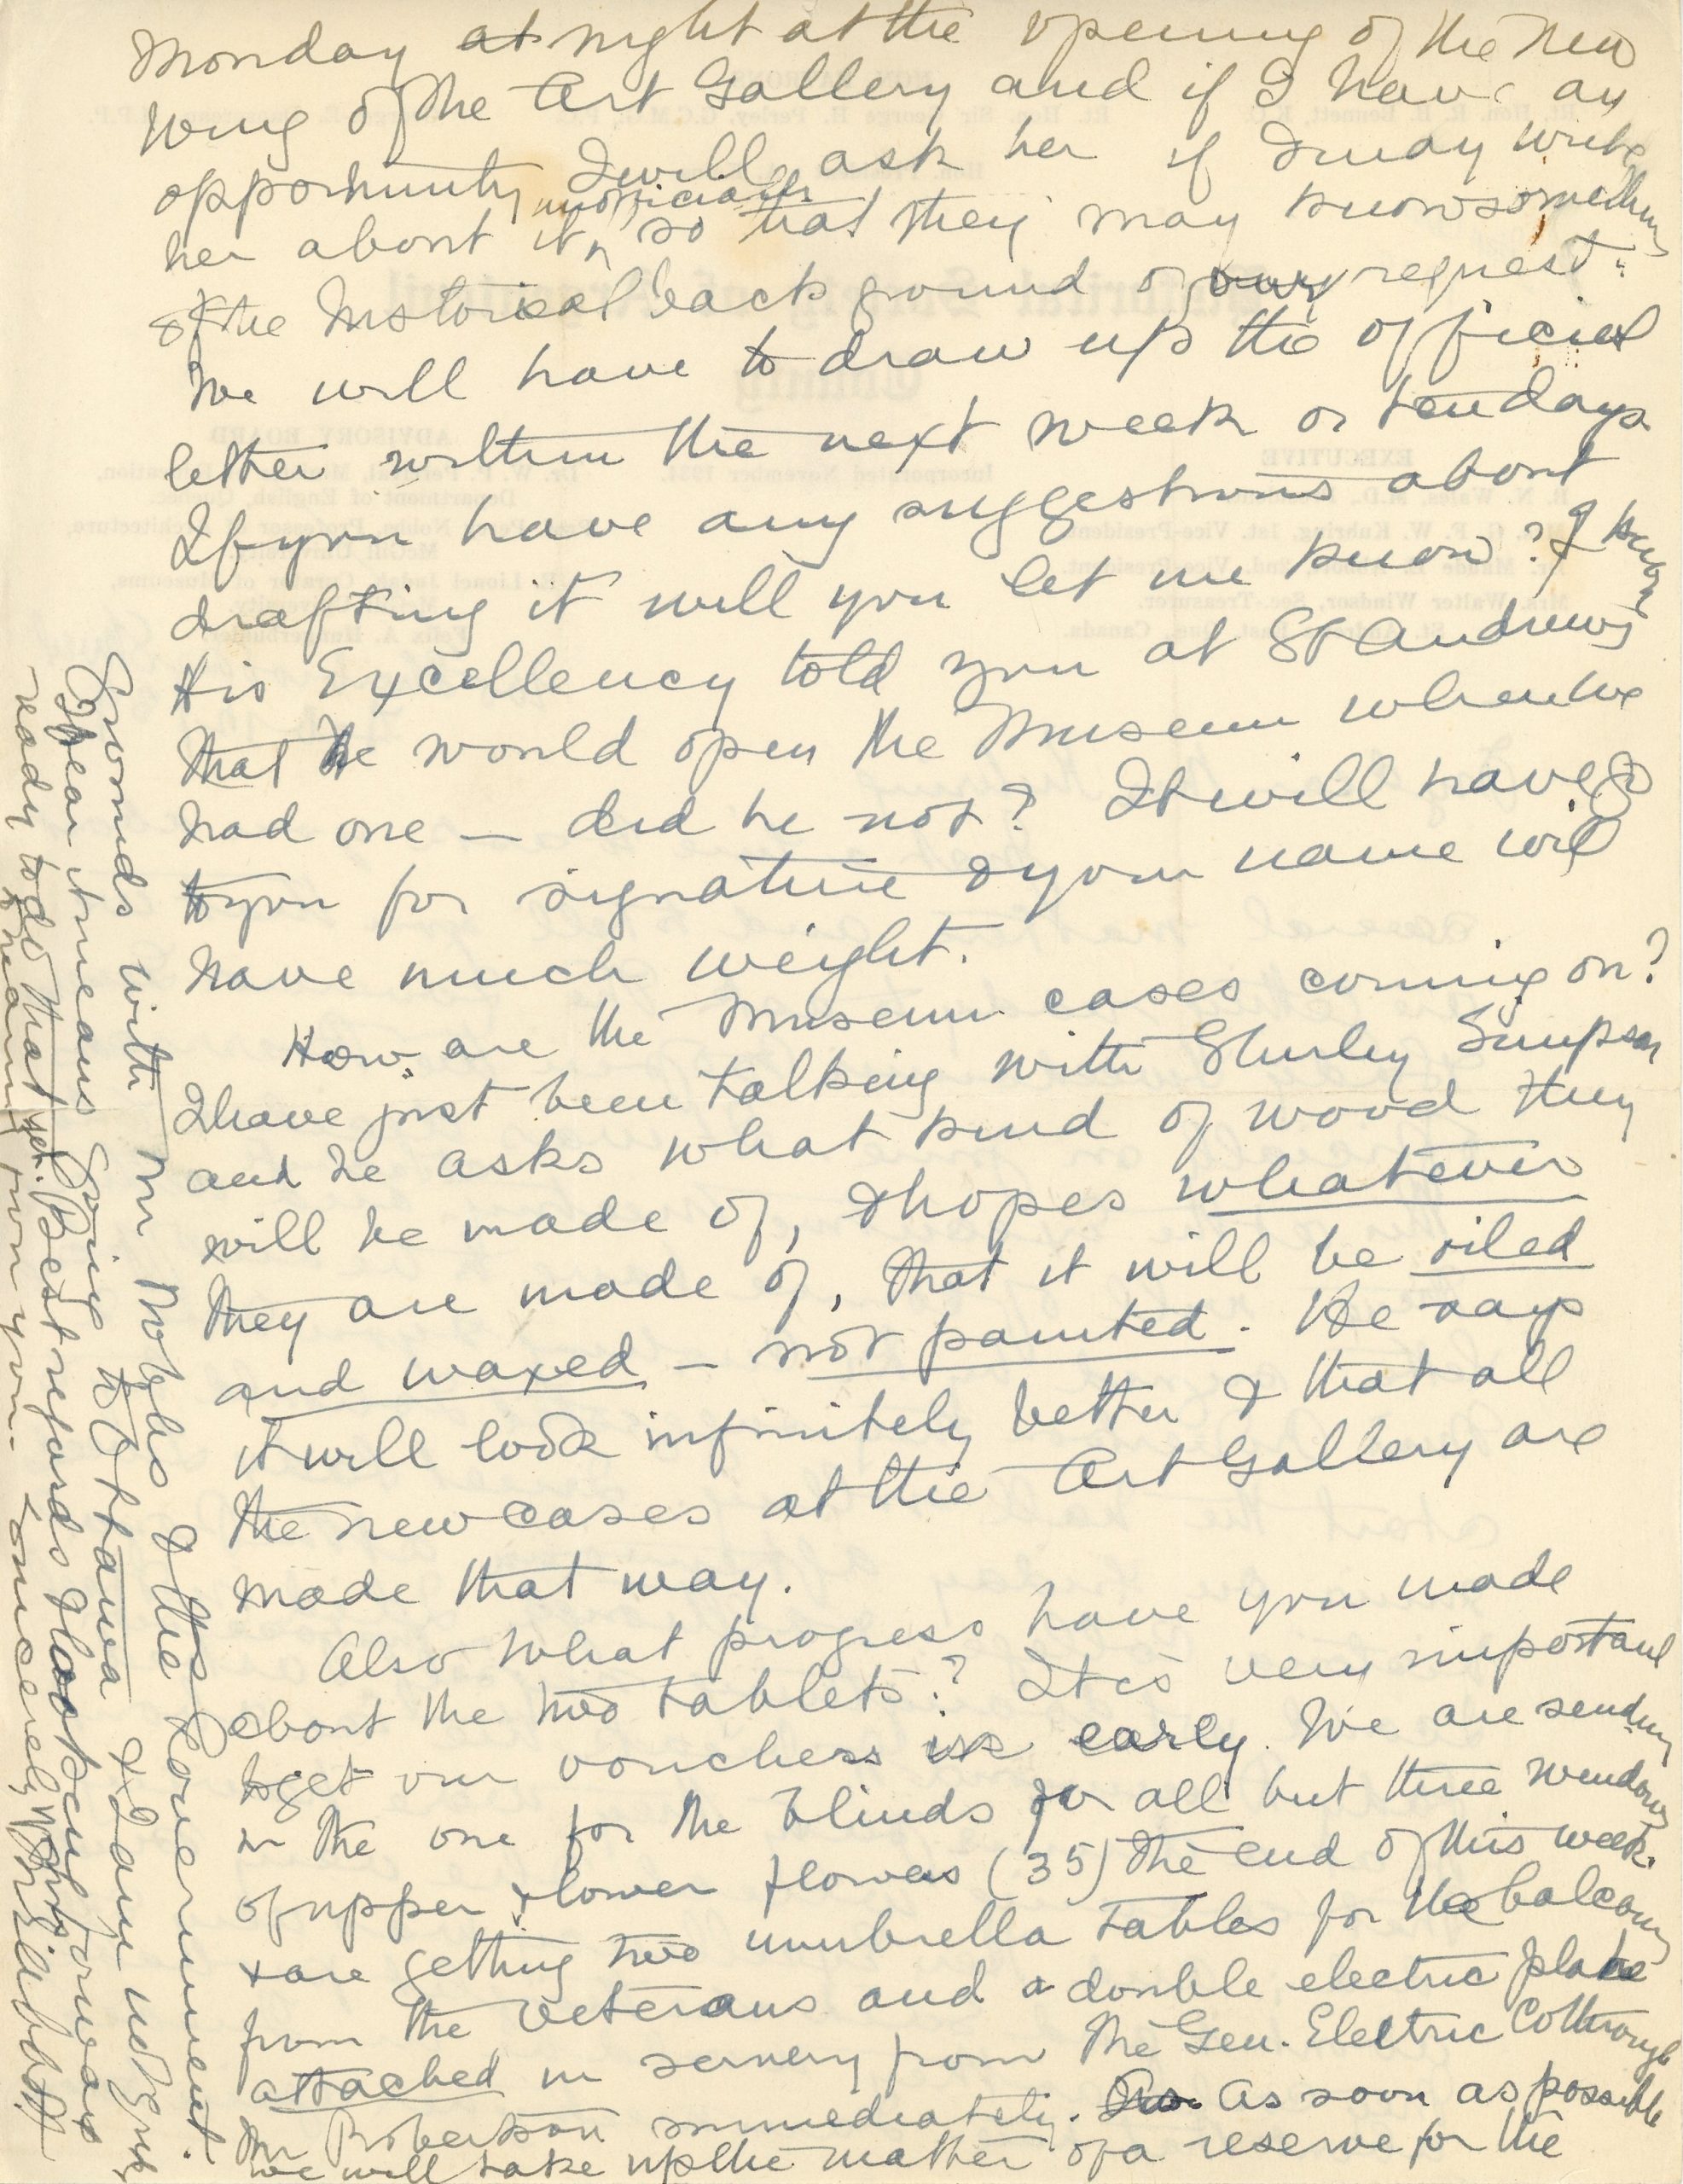 Lettre manuscrite de Maude Abbott à Mrs. Kuhring, 12 février 1939, encre noire et violette sur papier sépia. Elle lui parle des plans de demander au gouverneur général d’ouvrir officiellement la caserne militaire (abritant le musée) et lui demande des nouvelles sur l’avancement des caisses d’artéfacts et des tablettes pour le musée.